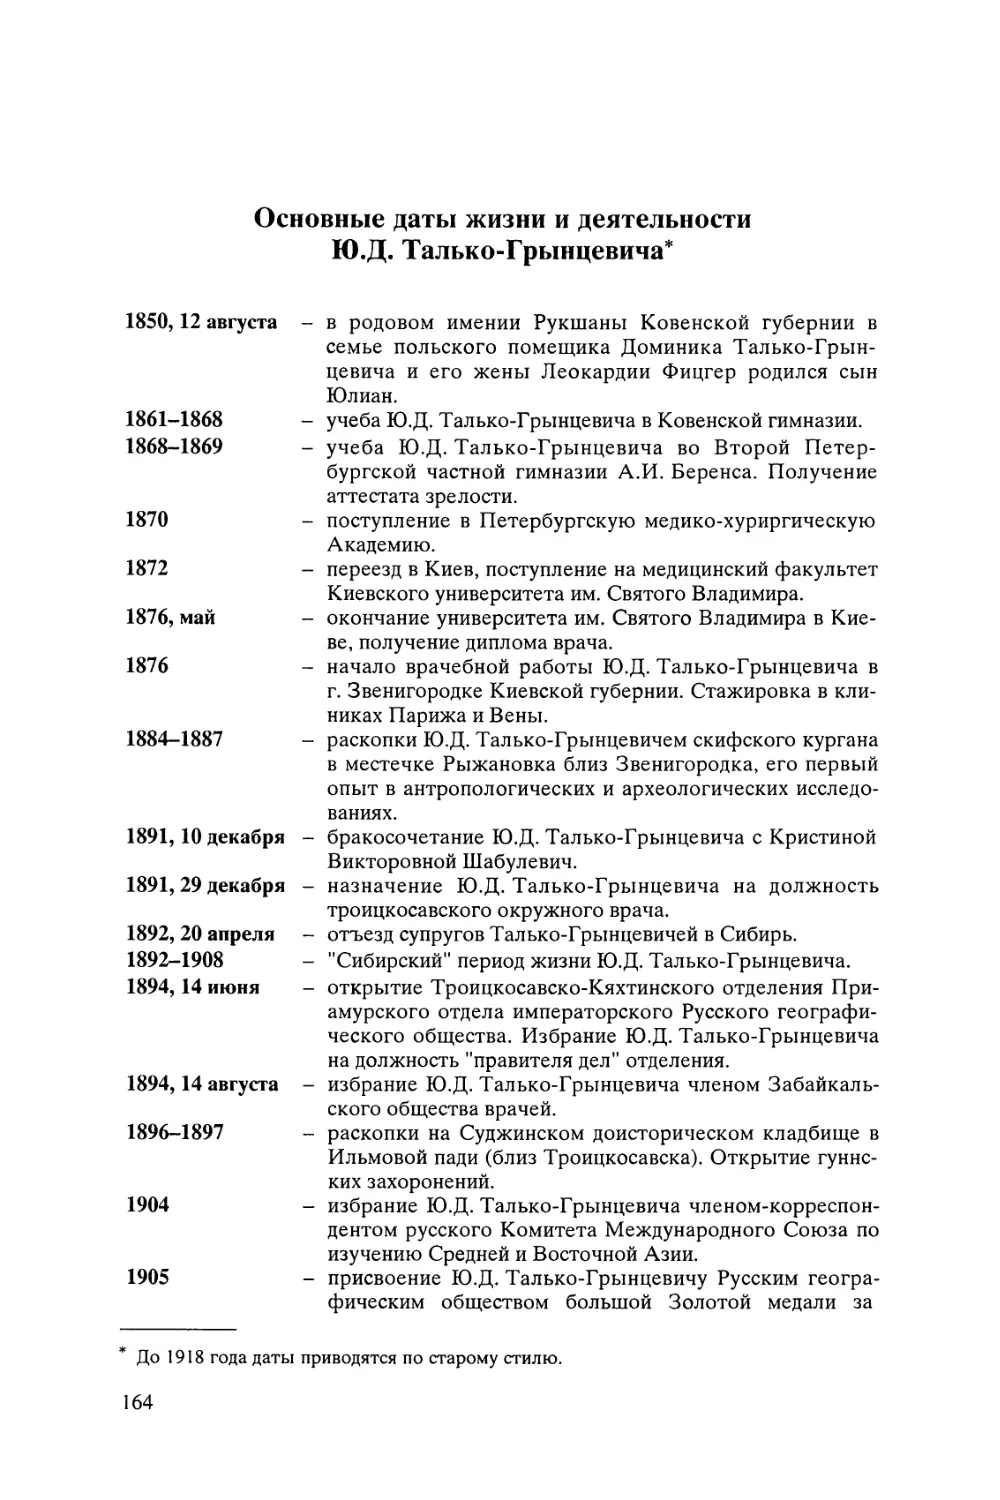 Основные даты жизни и деятельности Ю.Д. Талько-Грынцевича